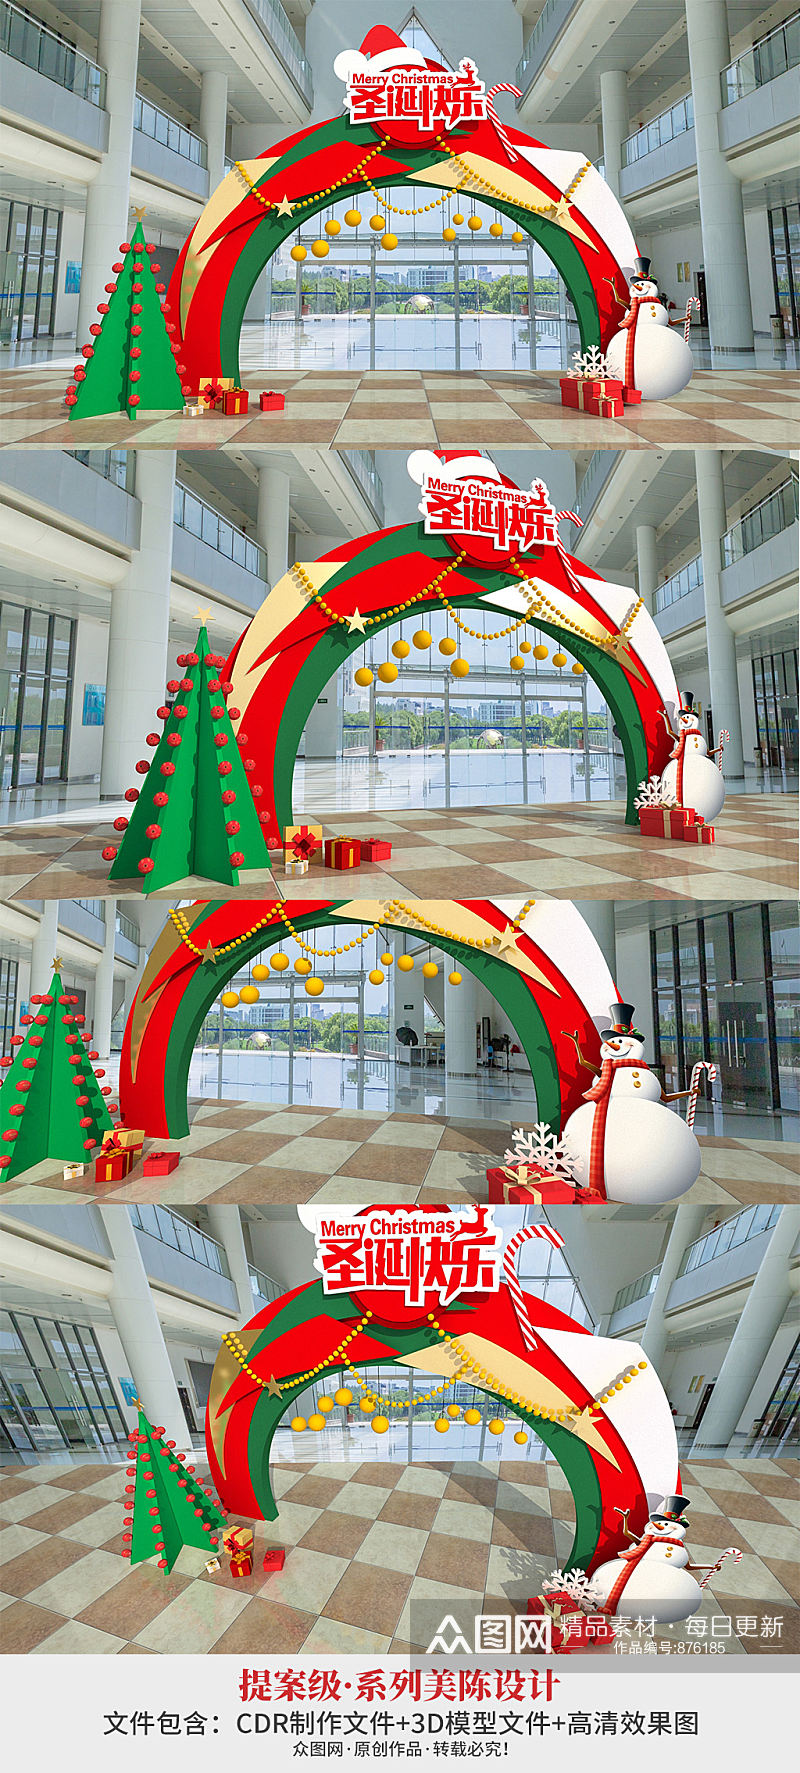 大型商场圣诞节美陈DP点 合影墙网红打卡墙素材